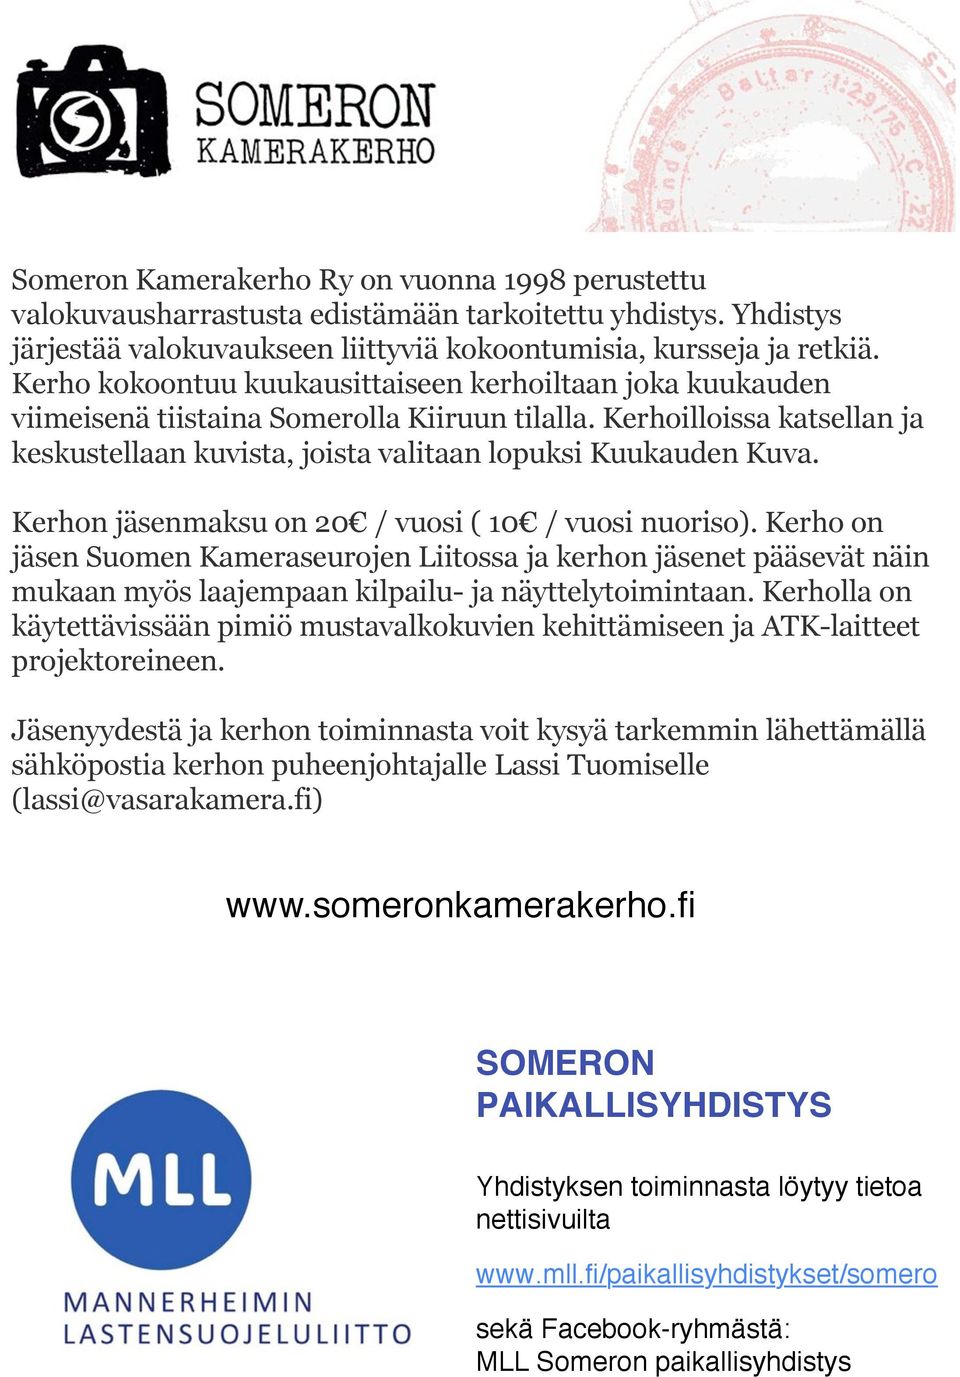 Kerhon jäsenmaksu on 20 / vuosi ( 10 / vuosi nuoriso). Kerho on jäsen Suomen Kameraseurojen Liitossa ja kerhon jäsenet pääsevät näin mukaan myös laajempaan kilpailu- ja näyttelytoimintaan.